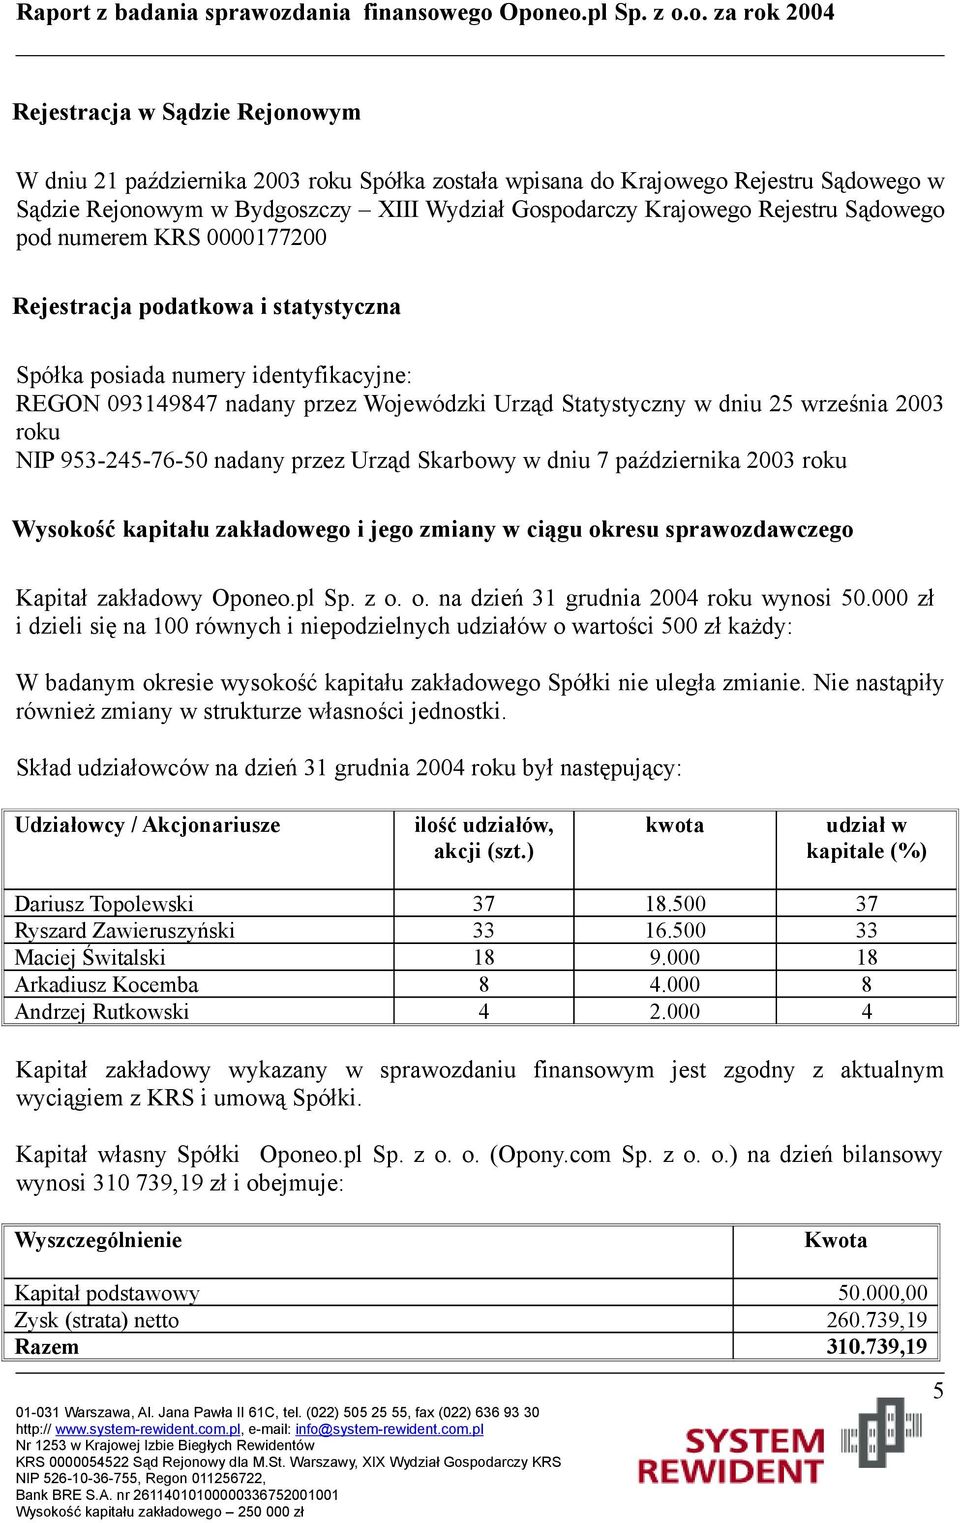 NIP 953-245-76-50 nadany przez Urząd Skarbowy w dniu 7 października 2003 roku Wysokość kapitału zakładowego i jego zmiany w ciągu okresu sprawozdawczego Kapitał zakładowy Oponeo.pl Sp. z o. o. na dzień 31 grudnia 2004 roku wynosi 50.